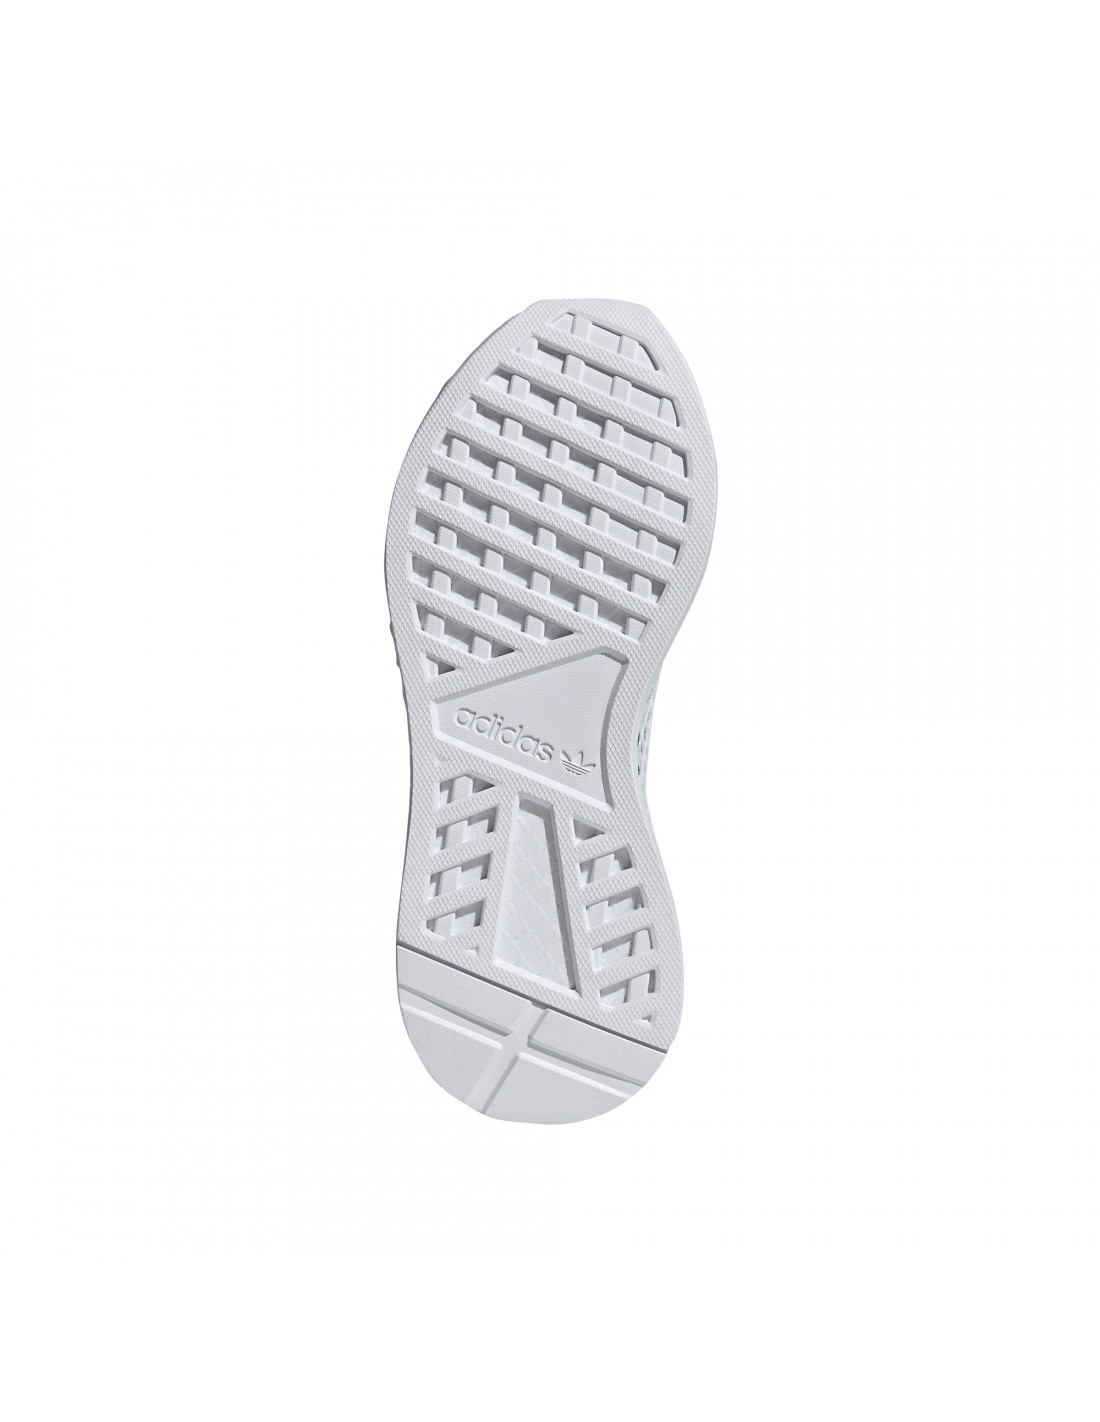 Zapatillas Originals Deerupt Runner Women Color Blanco calzado adidas 38